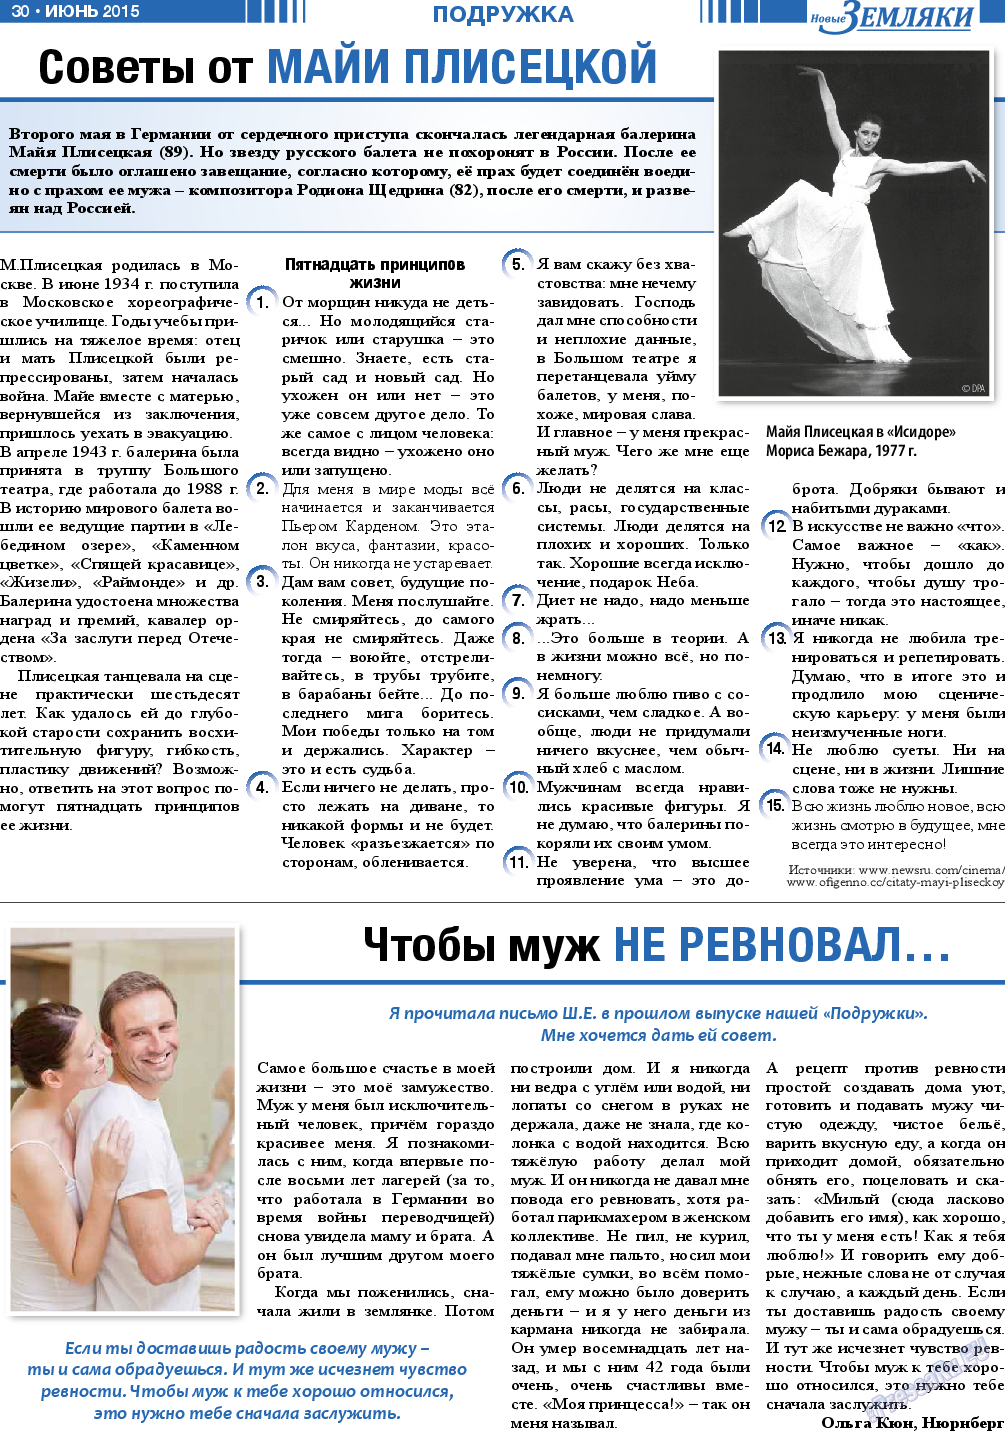 Новые Земляки, газета. 2015 №6 стр.30